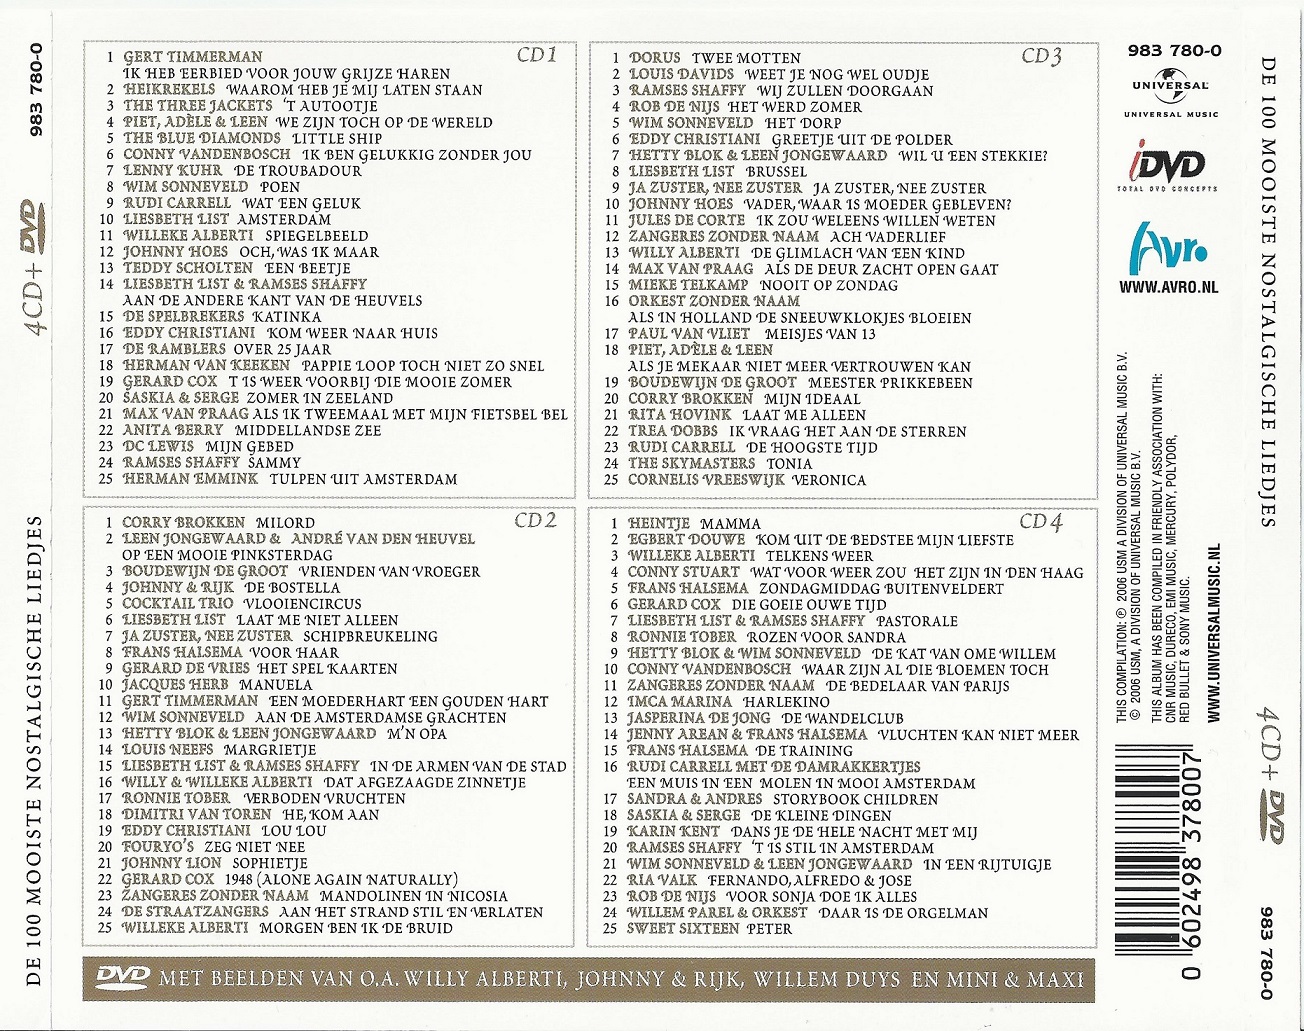 Toen was het stil op straat - De 100 mooiste nostalgische liedjes. (4CD)